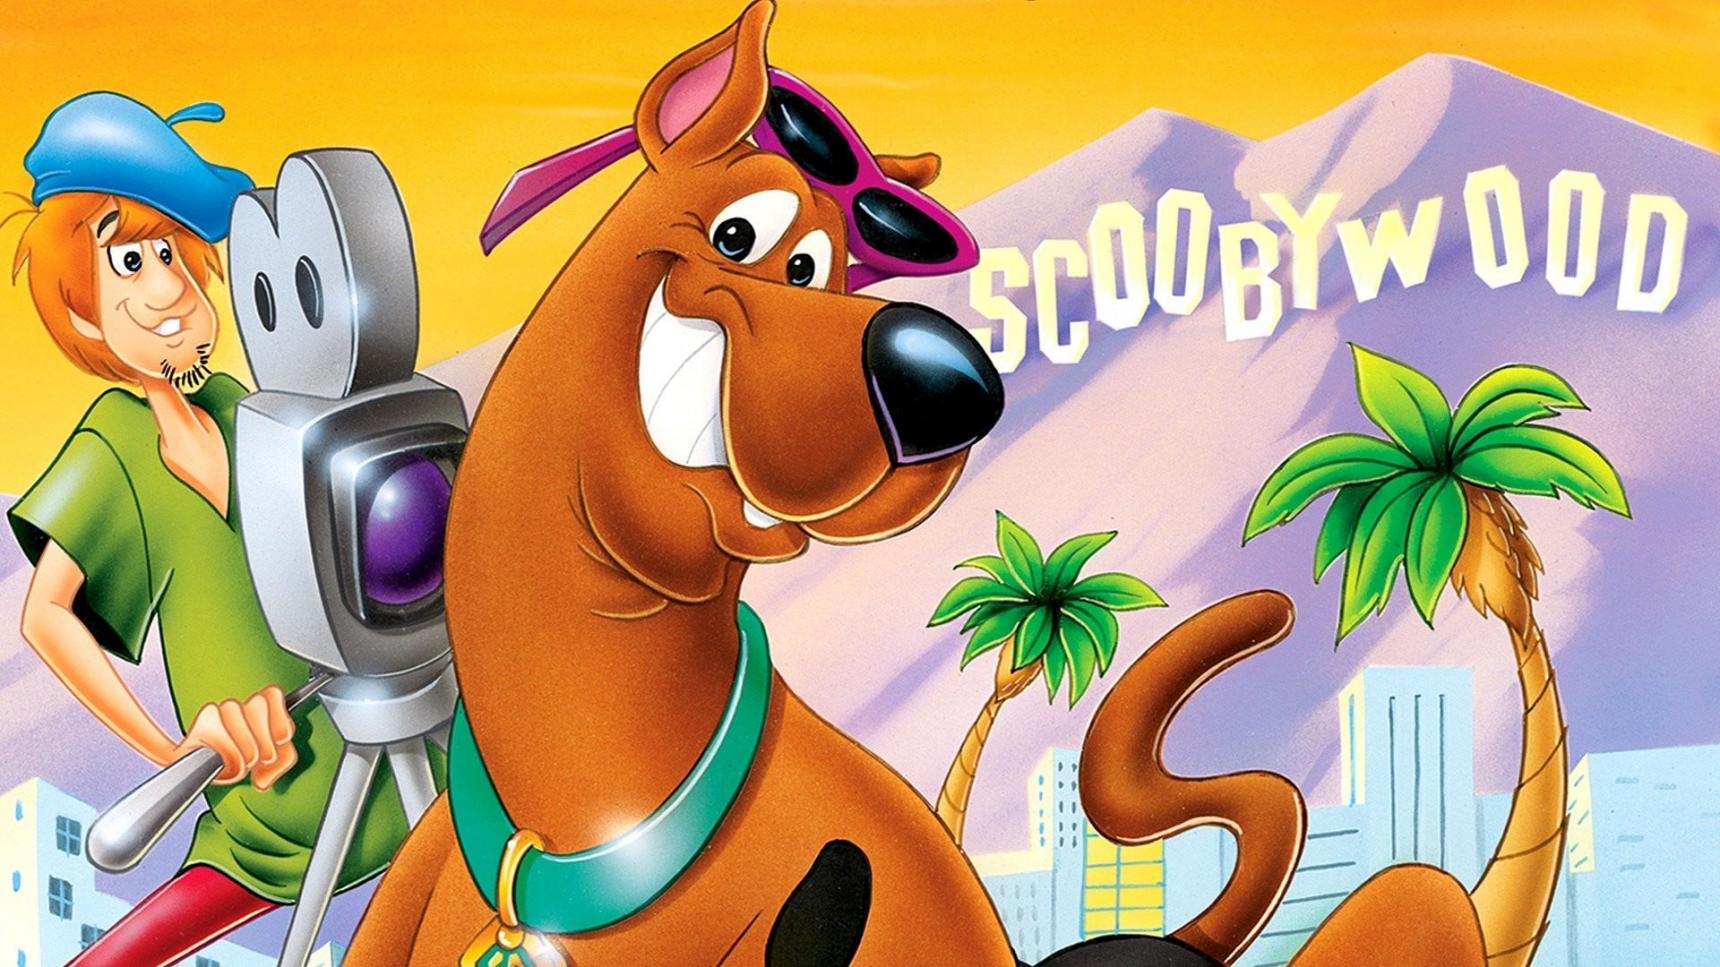 poster de Scooby-Doo, actor de Hollywood